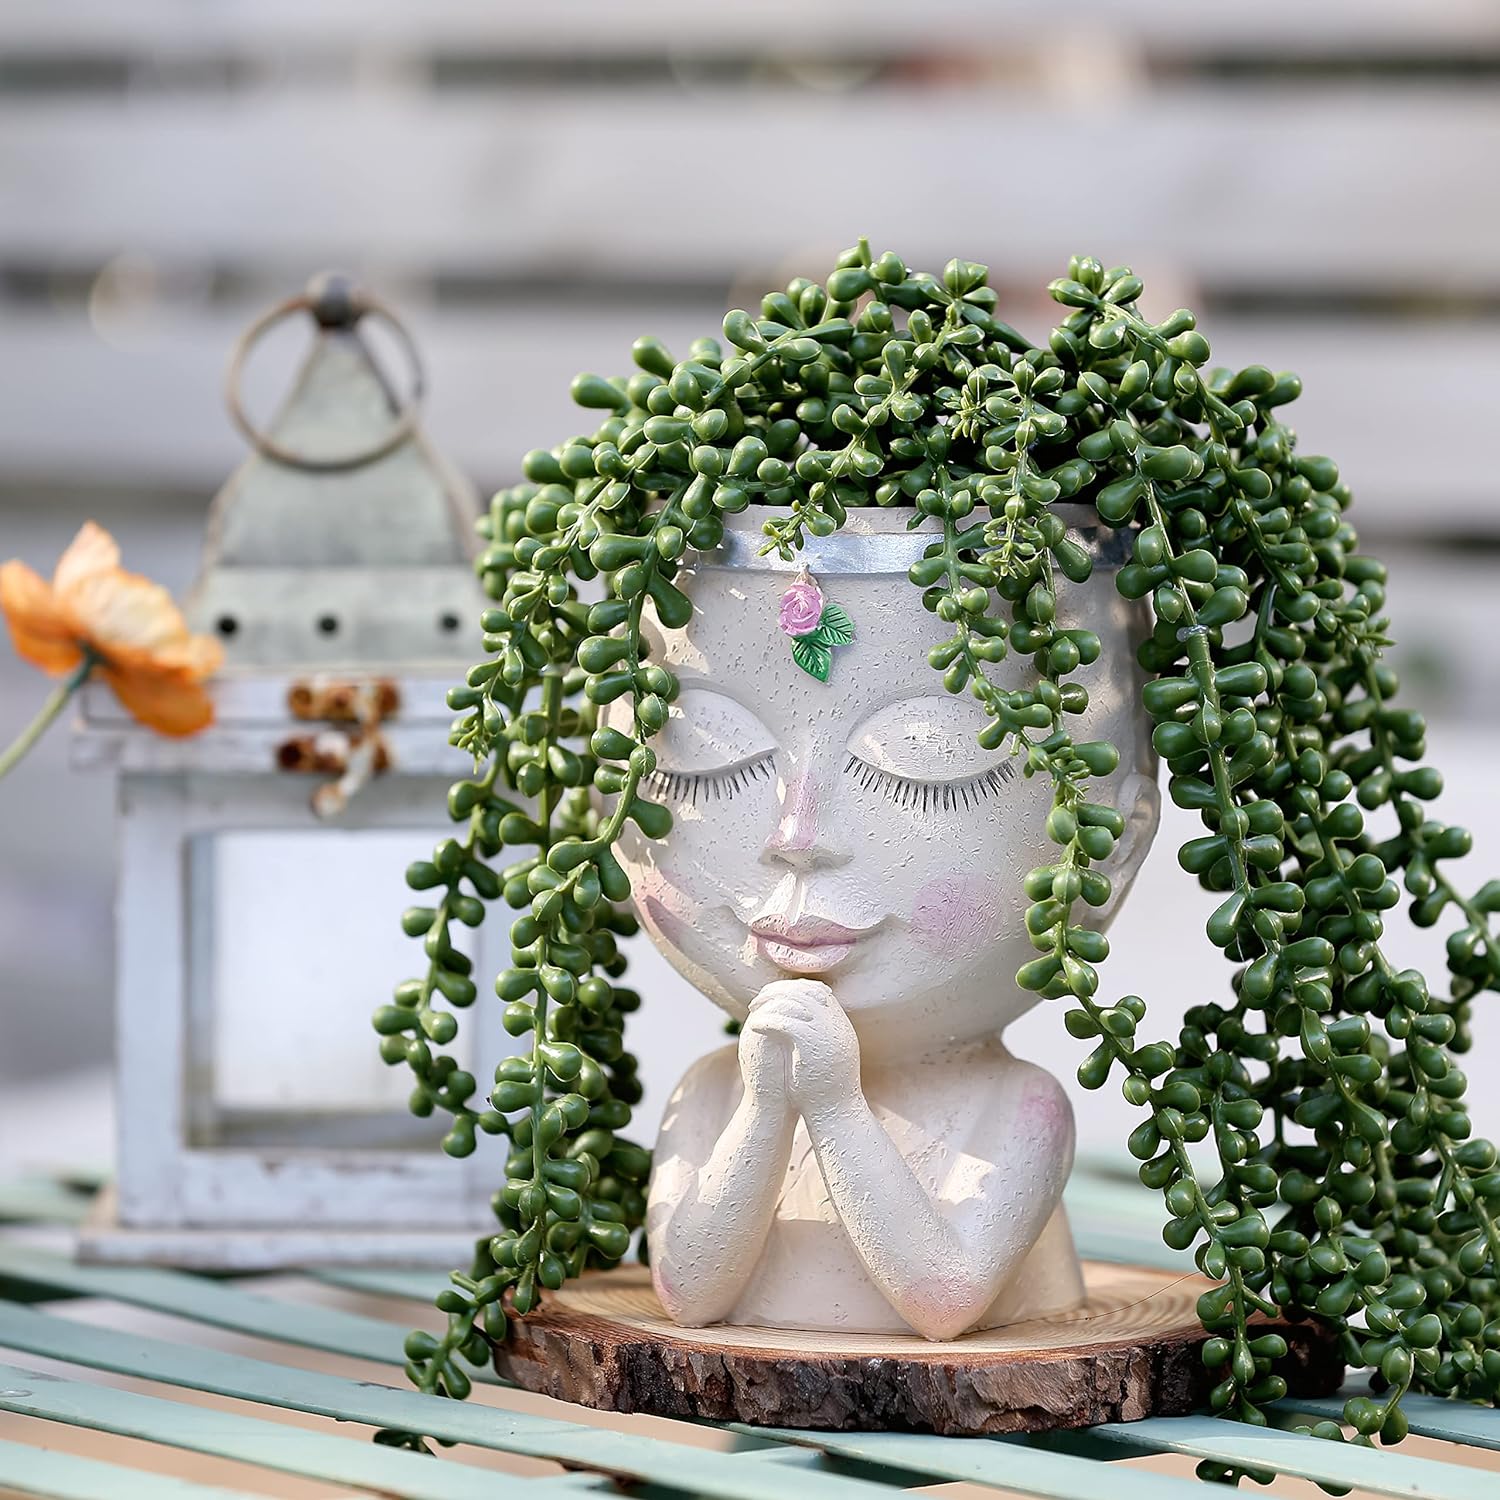 Resin Face Sculpture Head Planter Flowerpot Flower Vase Home Garden Decor 